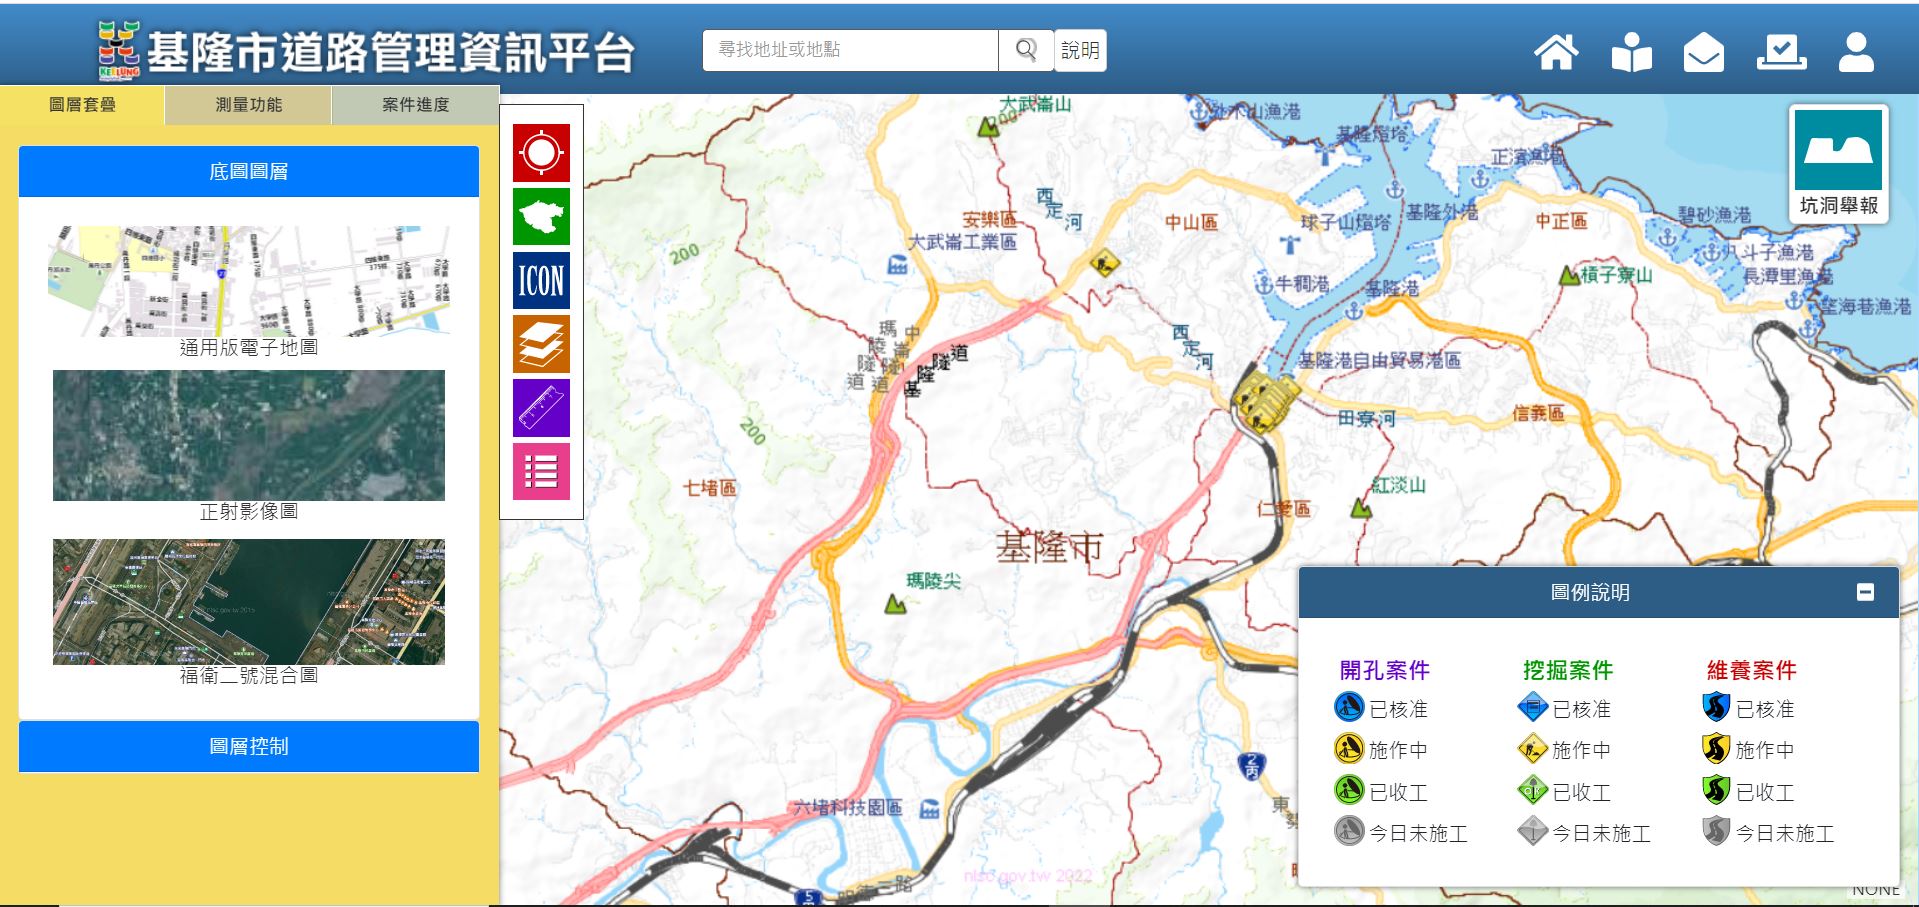 基隆市道路管理資訊平臺系統畫面